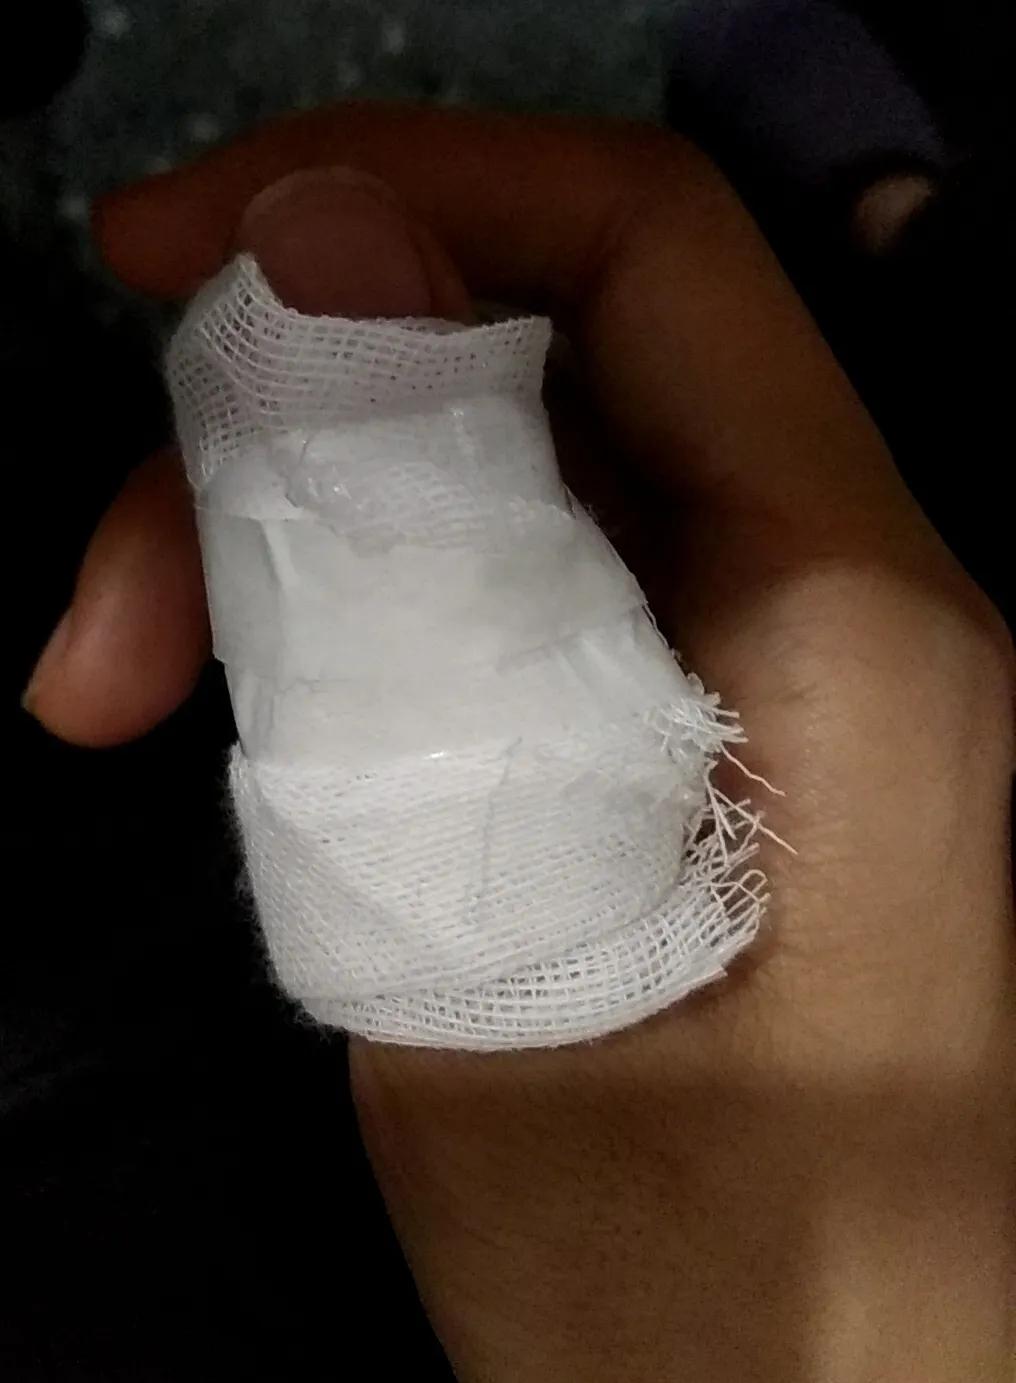 方博文的右手大拇指被菜刀砍伤